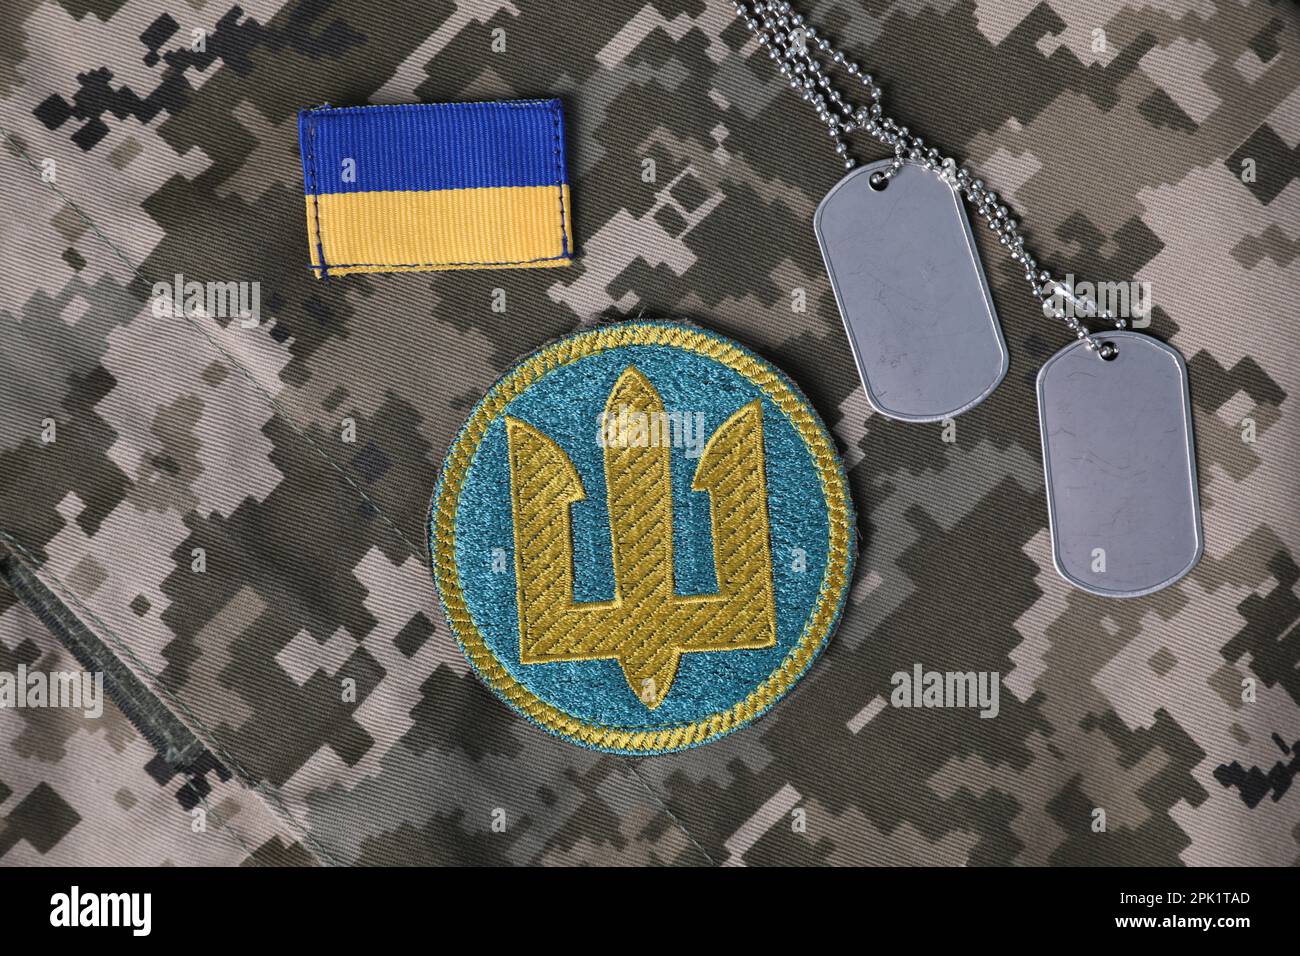 MYKOLAIV, UKRAINE - 19 SEPTEMBRE 2020: Composition de la pose plate avec des timbres militaires de l'Ukraine et des étiquettes de chien sur fond de camouflage Banque D'Images